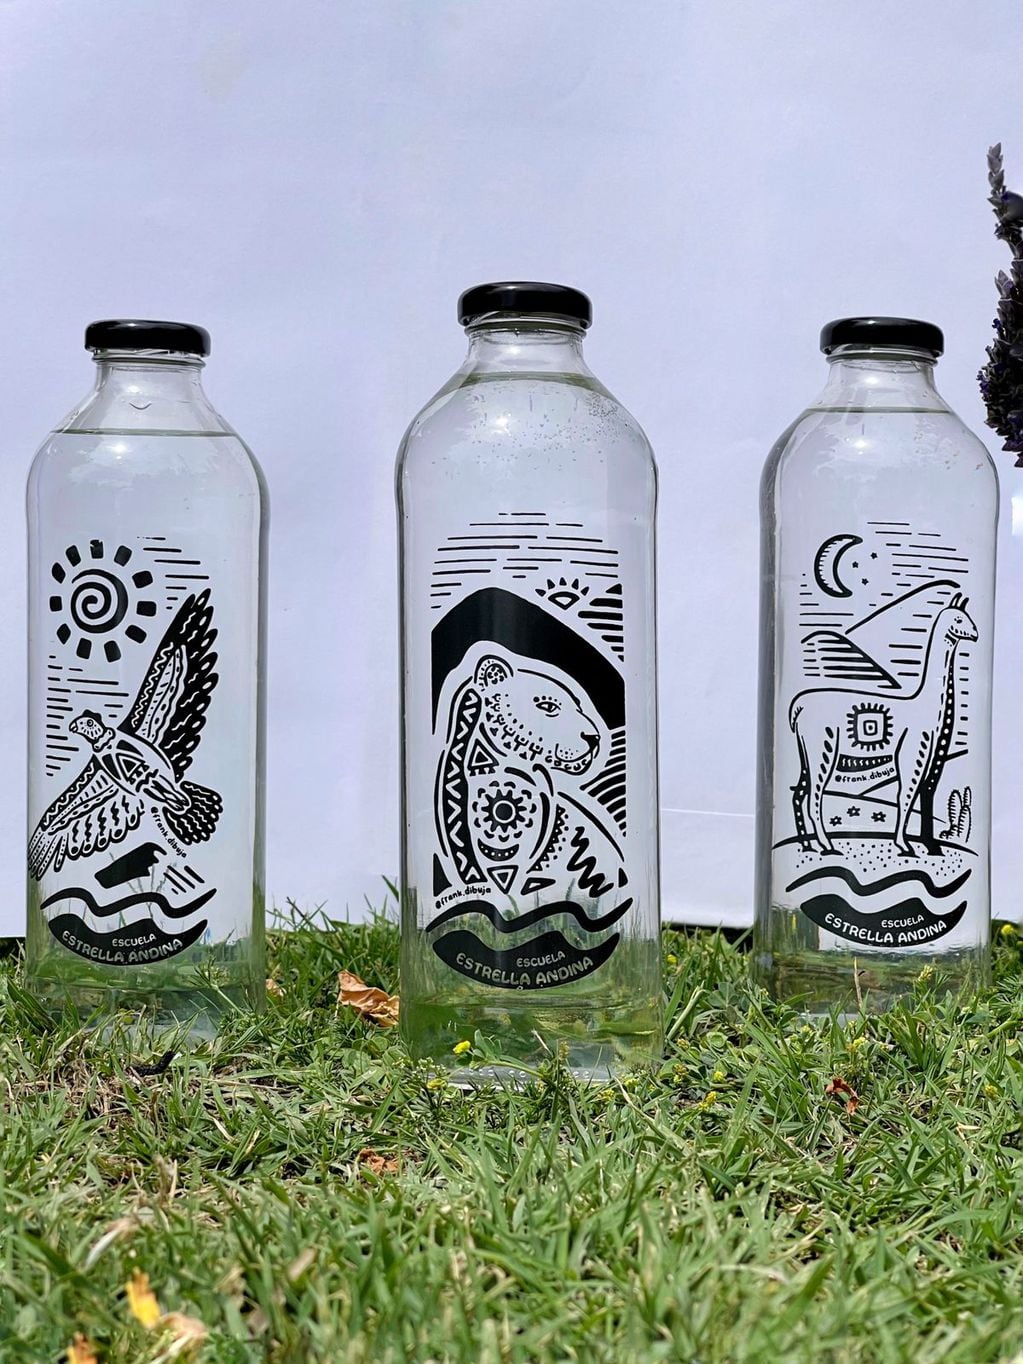 Original y creativa campaña: venden botellas con motivos artísticos para poder ampliar su escuela en Luján de Cuyo. Foto: Gentileza Escuela Estrella Andina